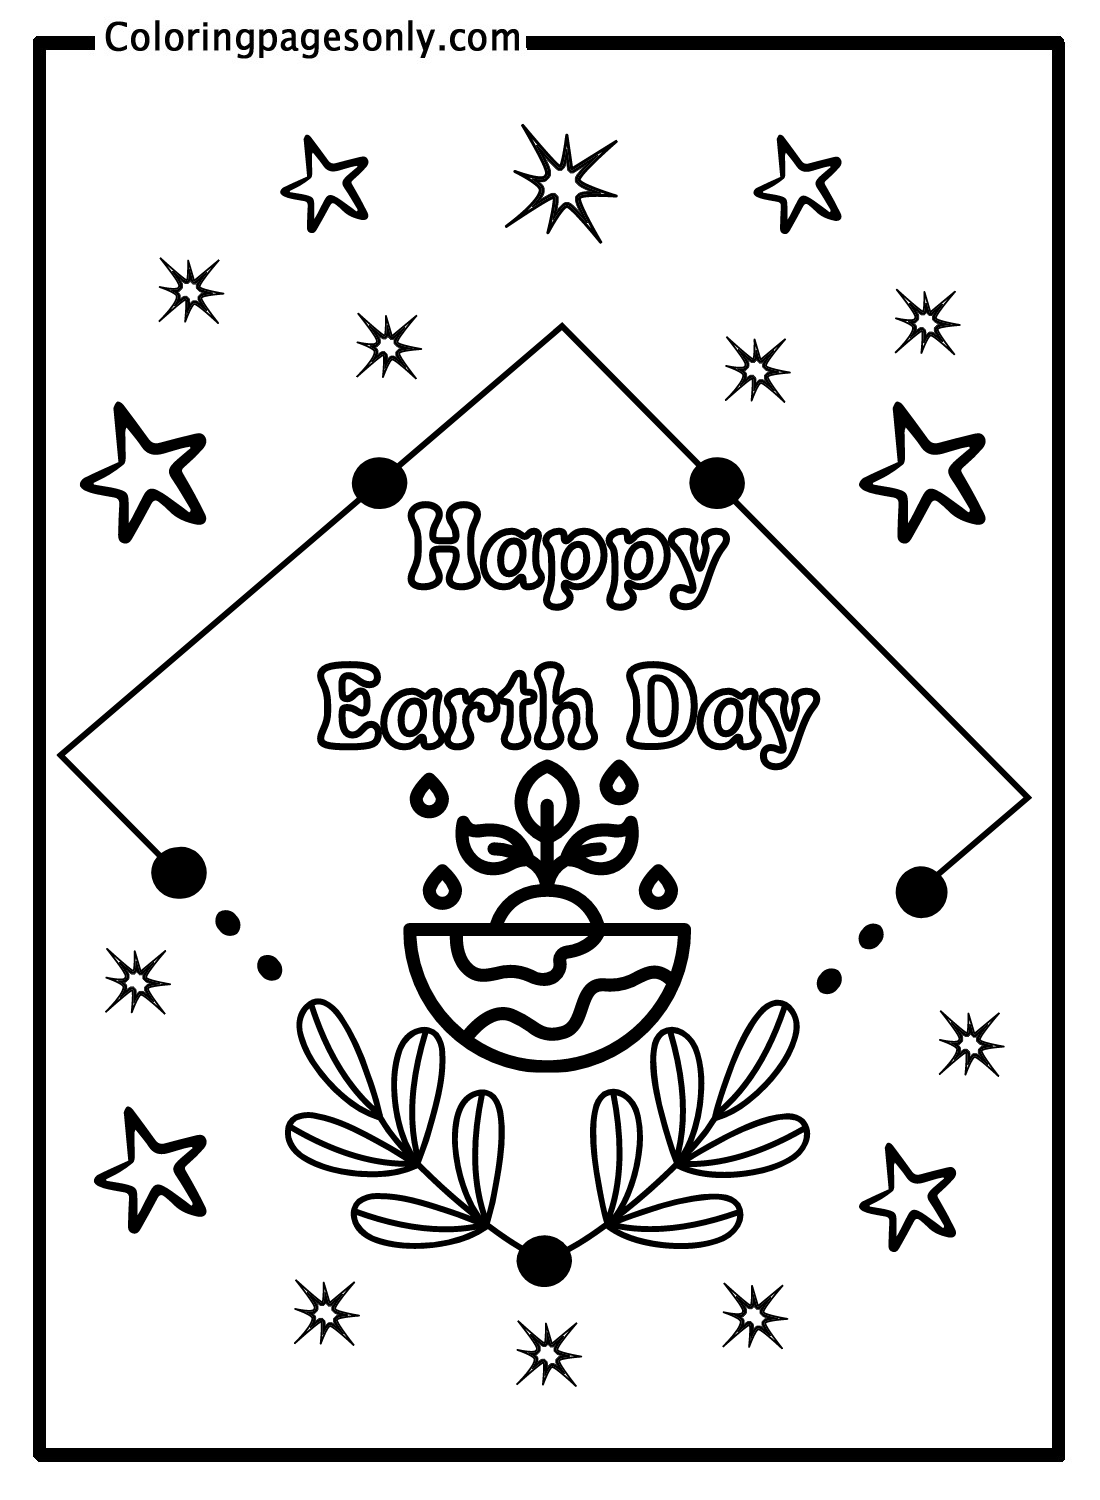 Feliz Dia da Terra para as Crianças do Dia da Terra